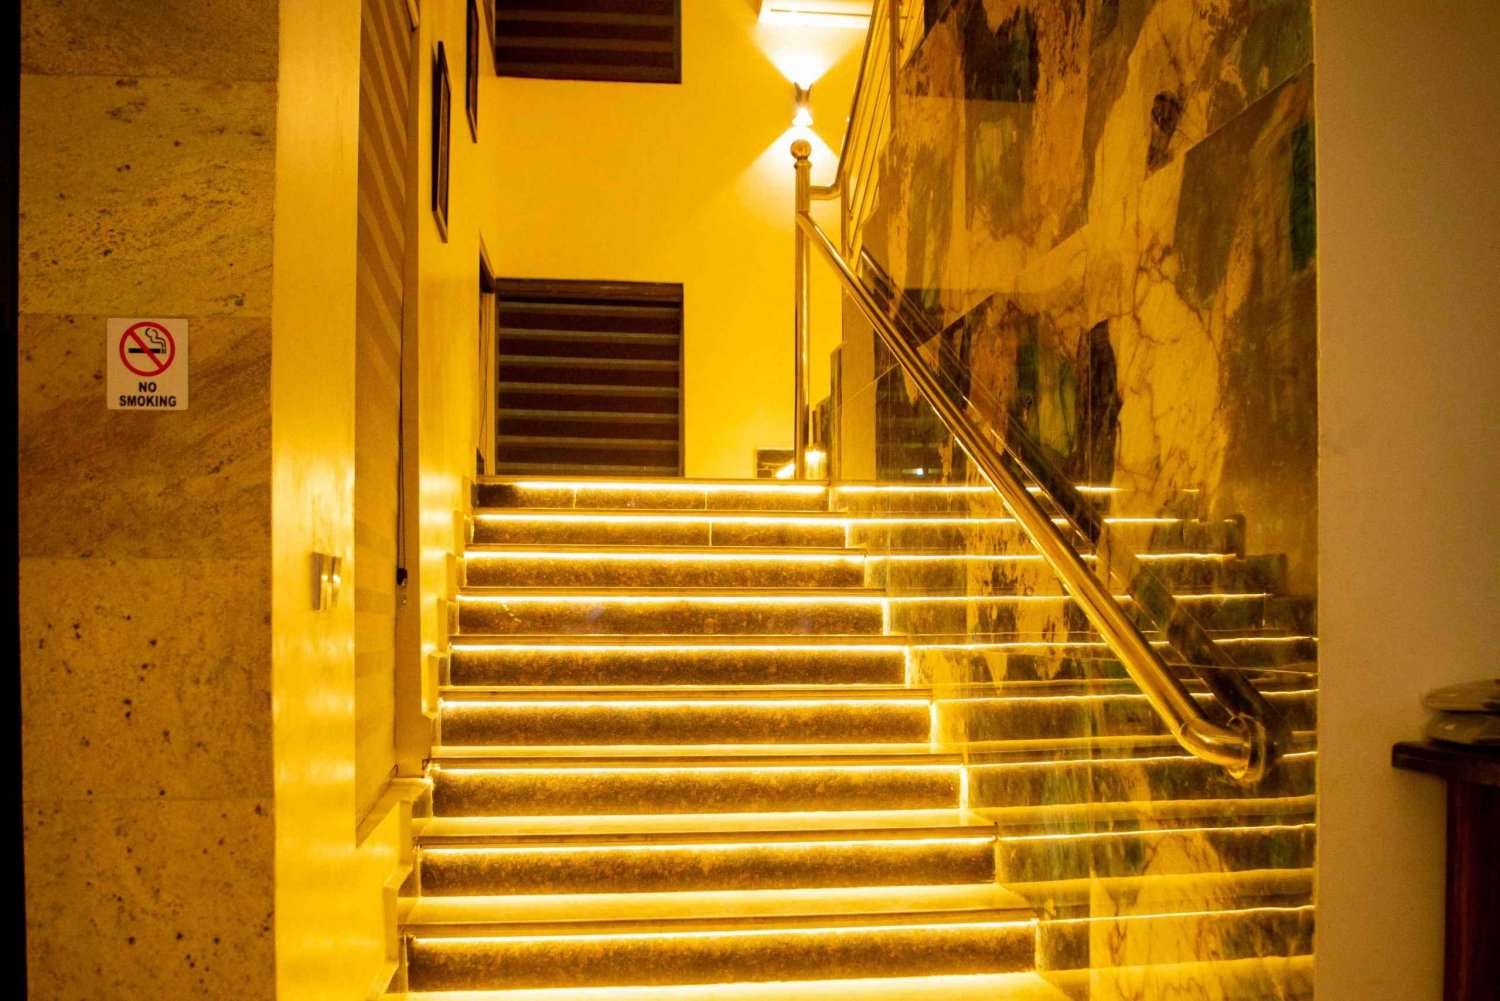 'Rosmohr Gold Hotel: Luksuriøs flukt'